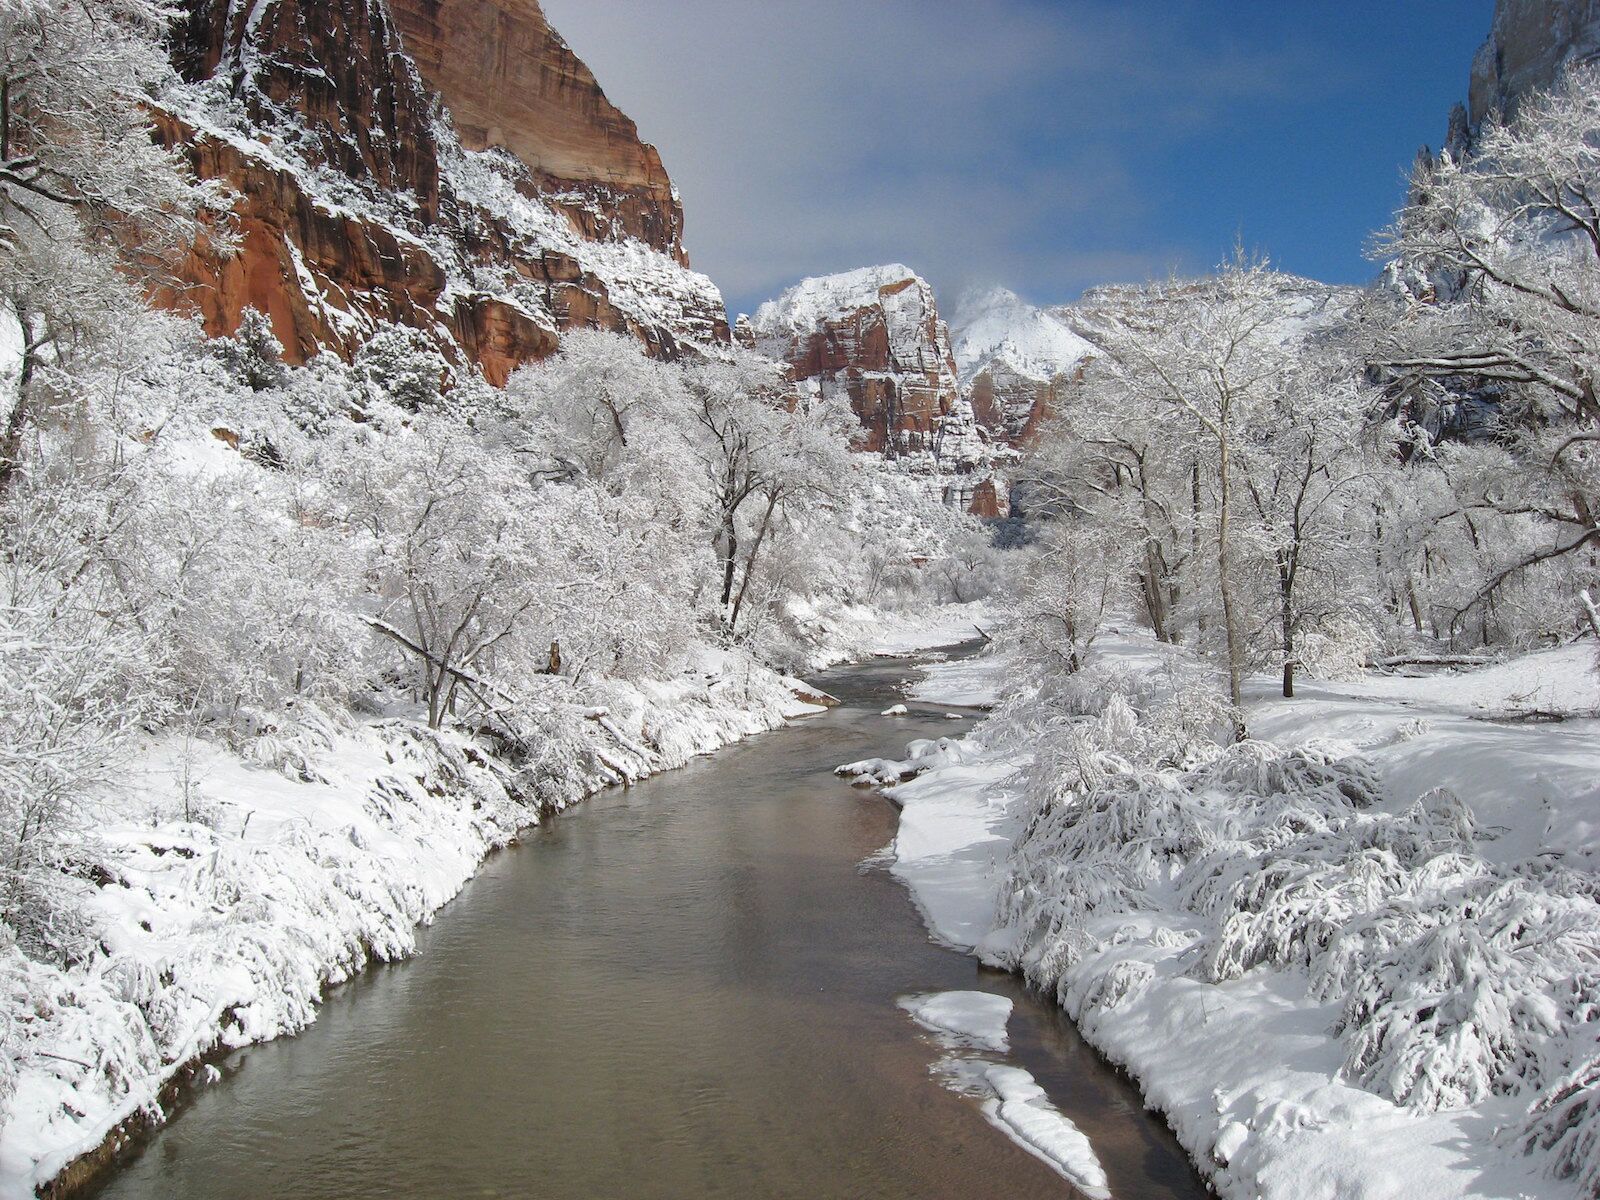 Winter in Zion